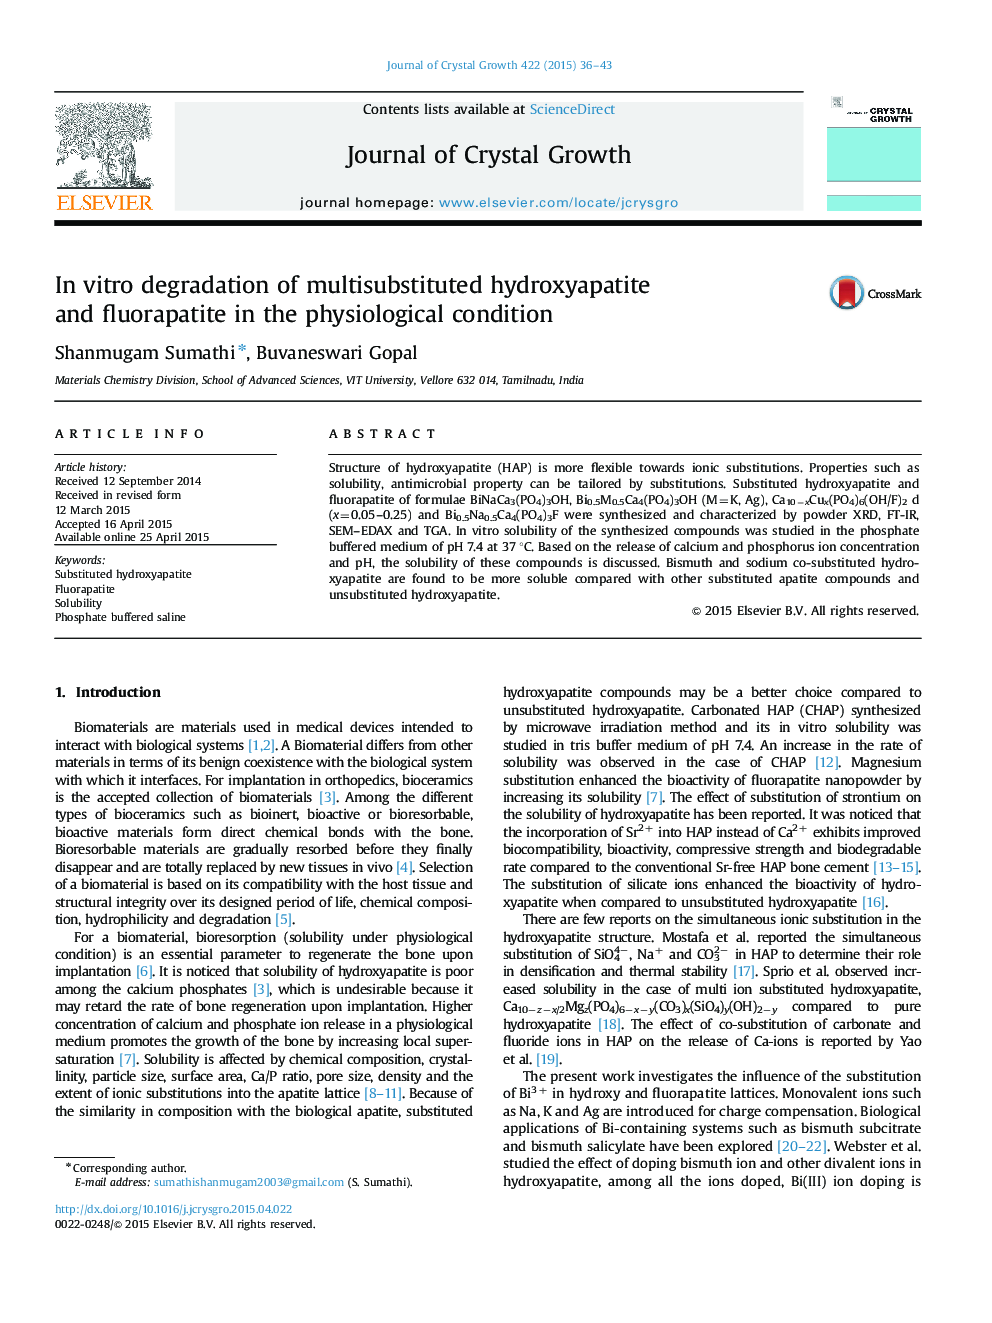 تخریب درون سلولی هیدروکسی آپاتیت و فلوراپاتیت چندگانه در شرایط فیزیولوژیکی 